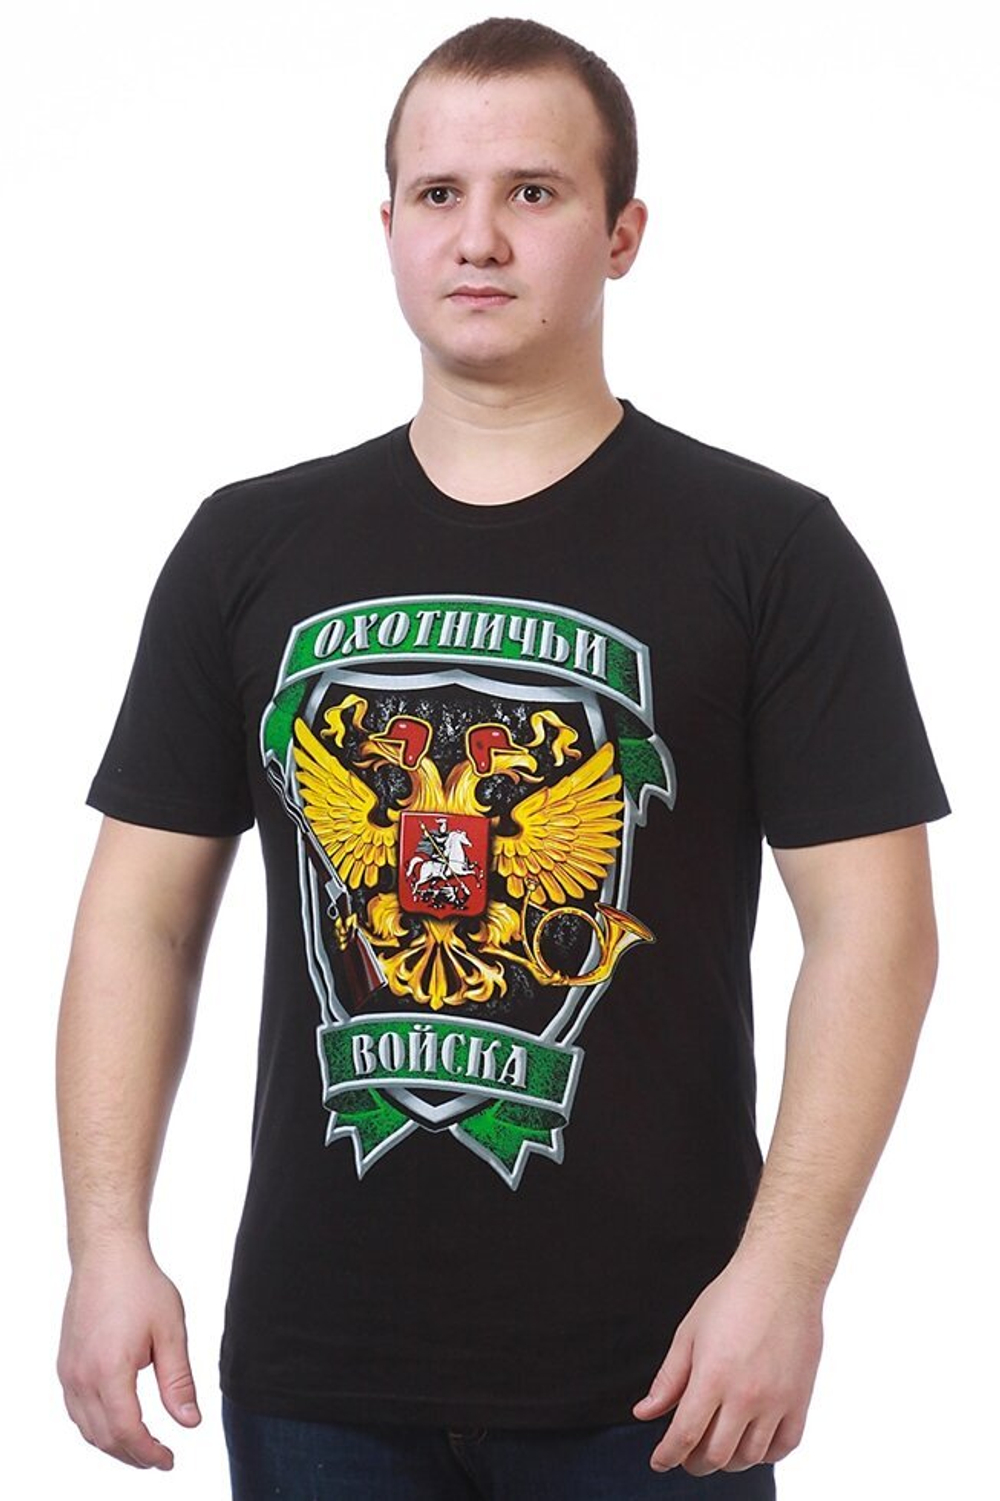 Прикольная футболка «Охотничьи войска»